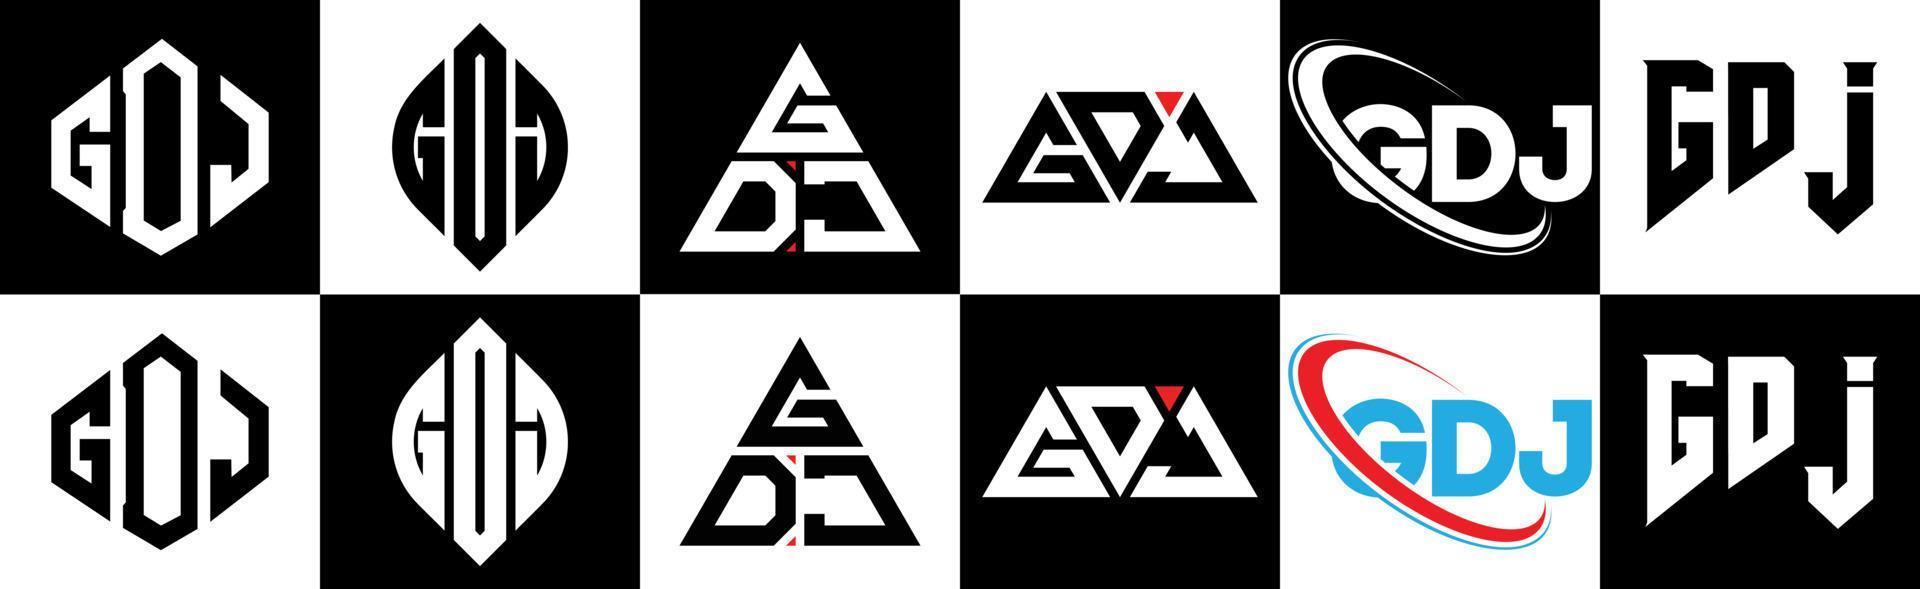 Diseño de logotipo de letra gdj en seis estilos. gdj polígono, círculo, triángulo, hexágono, estilo plano y simple con logotipo de letra de variación de color blanco y negro en una mesa de trabajo. logotipo minimalista y clásico de gdj vector